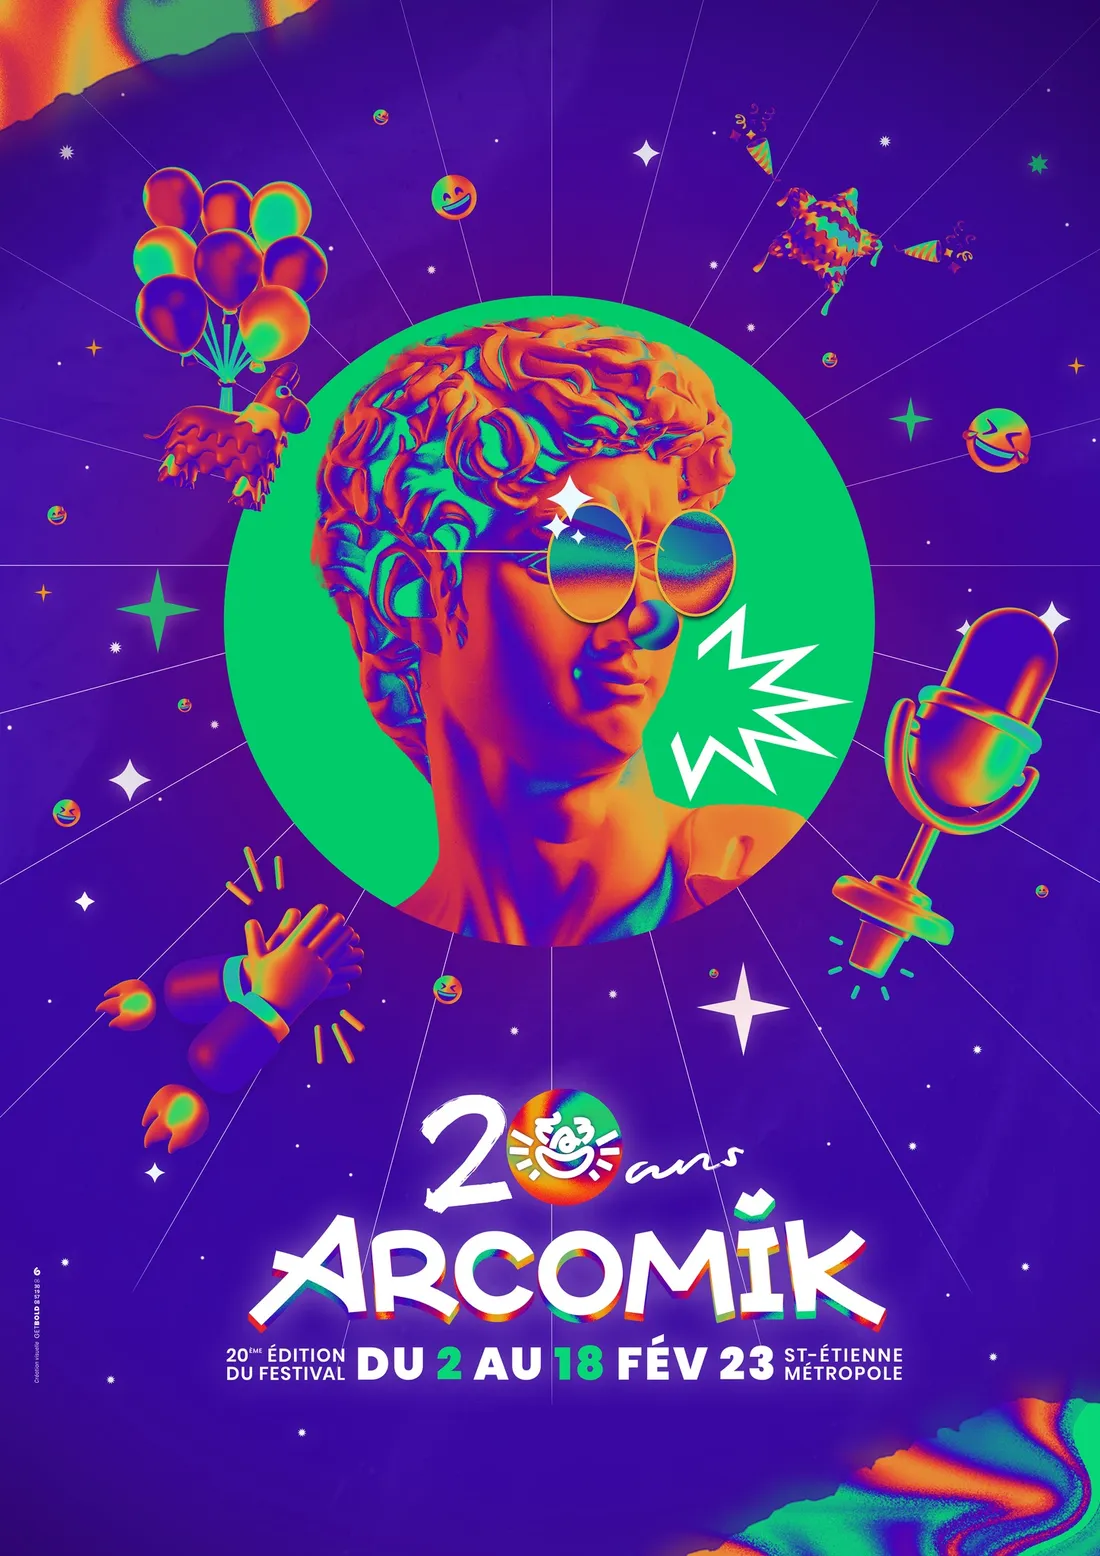 Le festival arcomik fête ses vingt ans